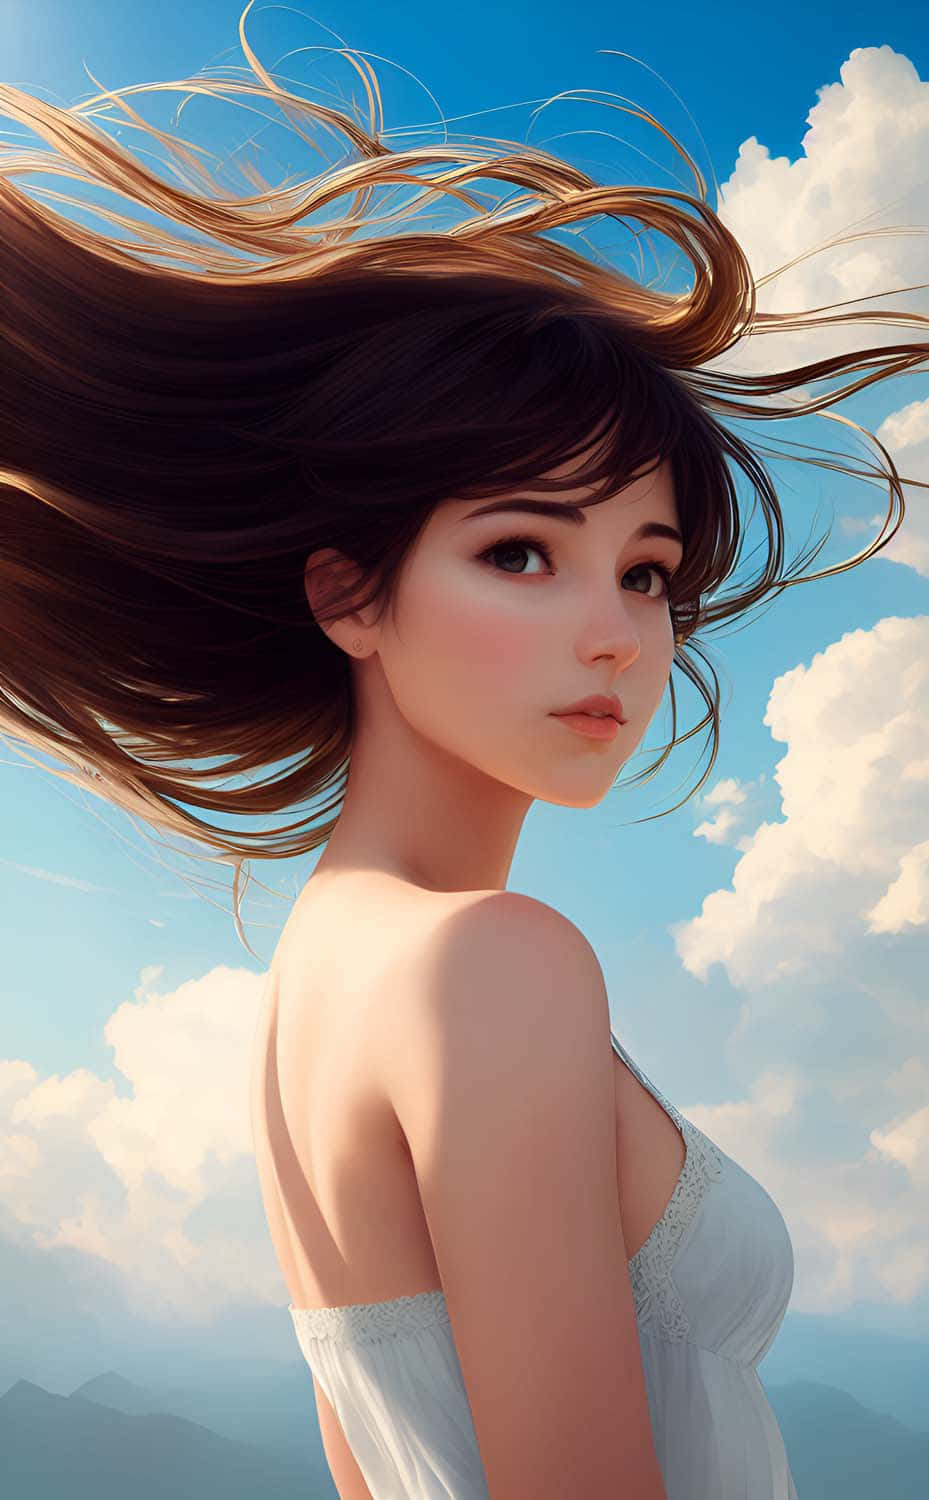 Elegant Woman Flowing Hair Sky Background Wallpaper